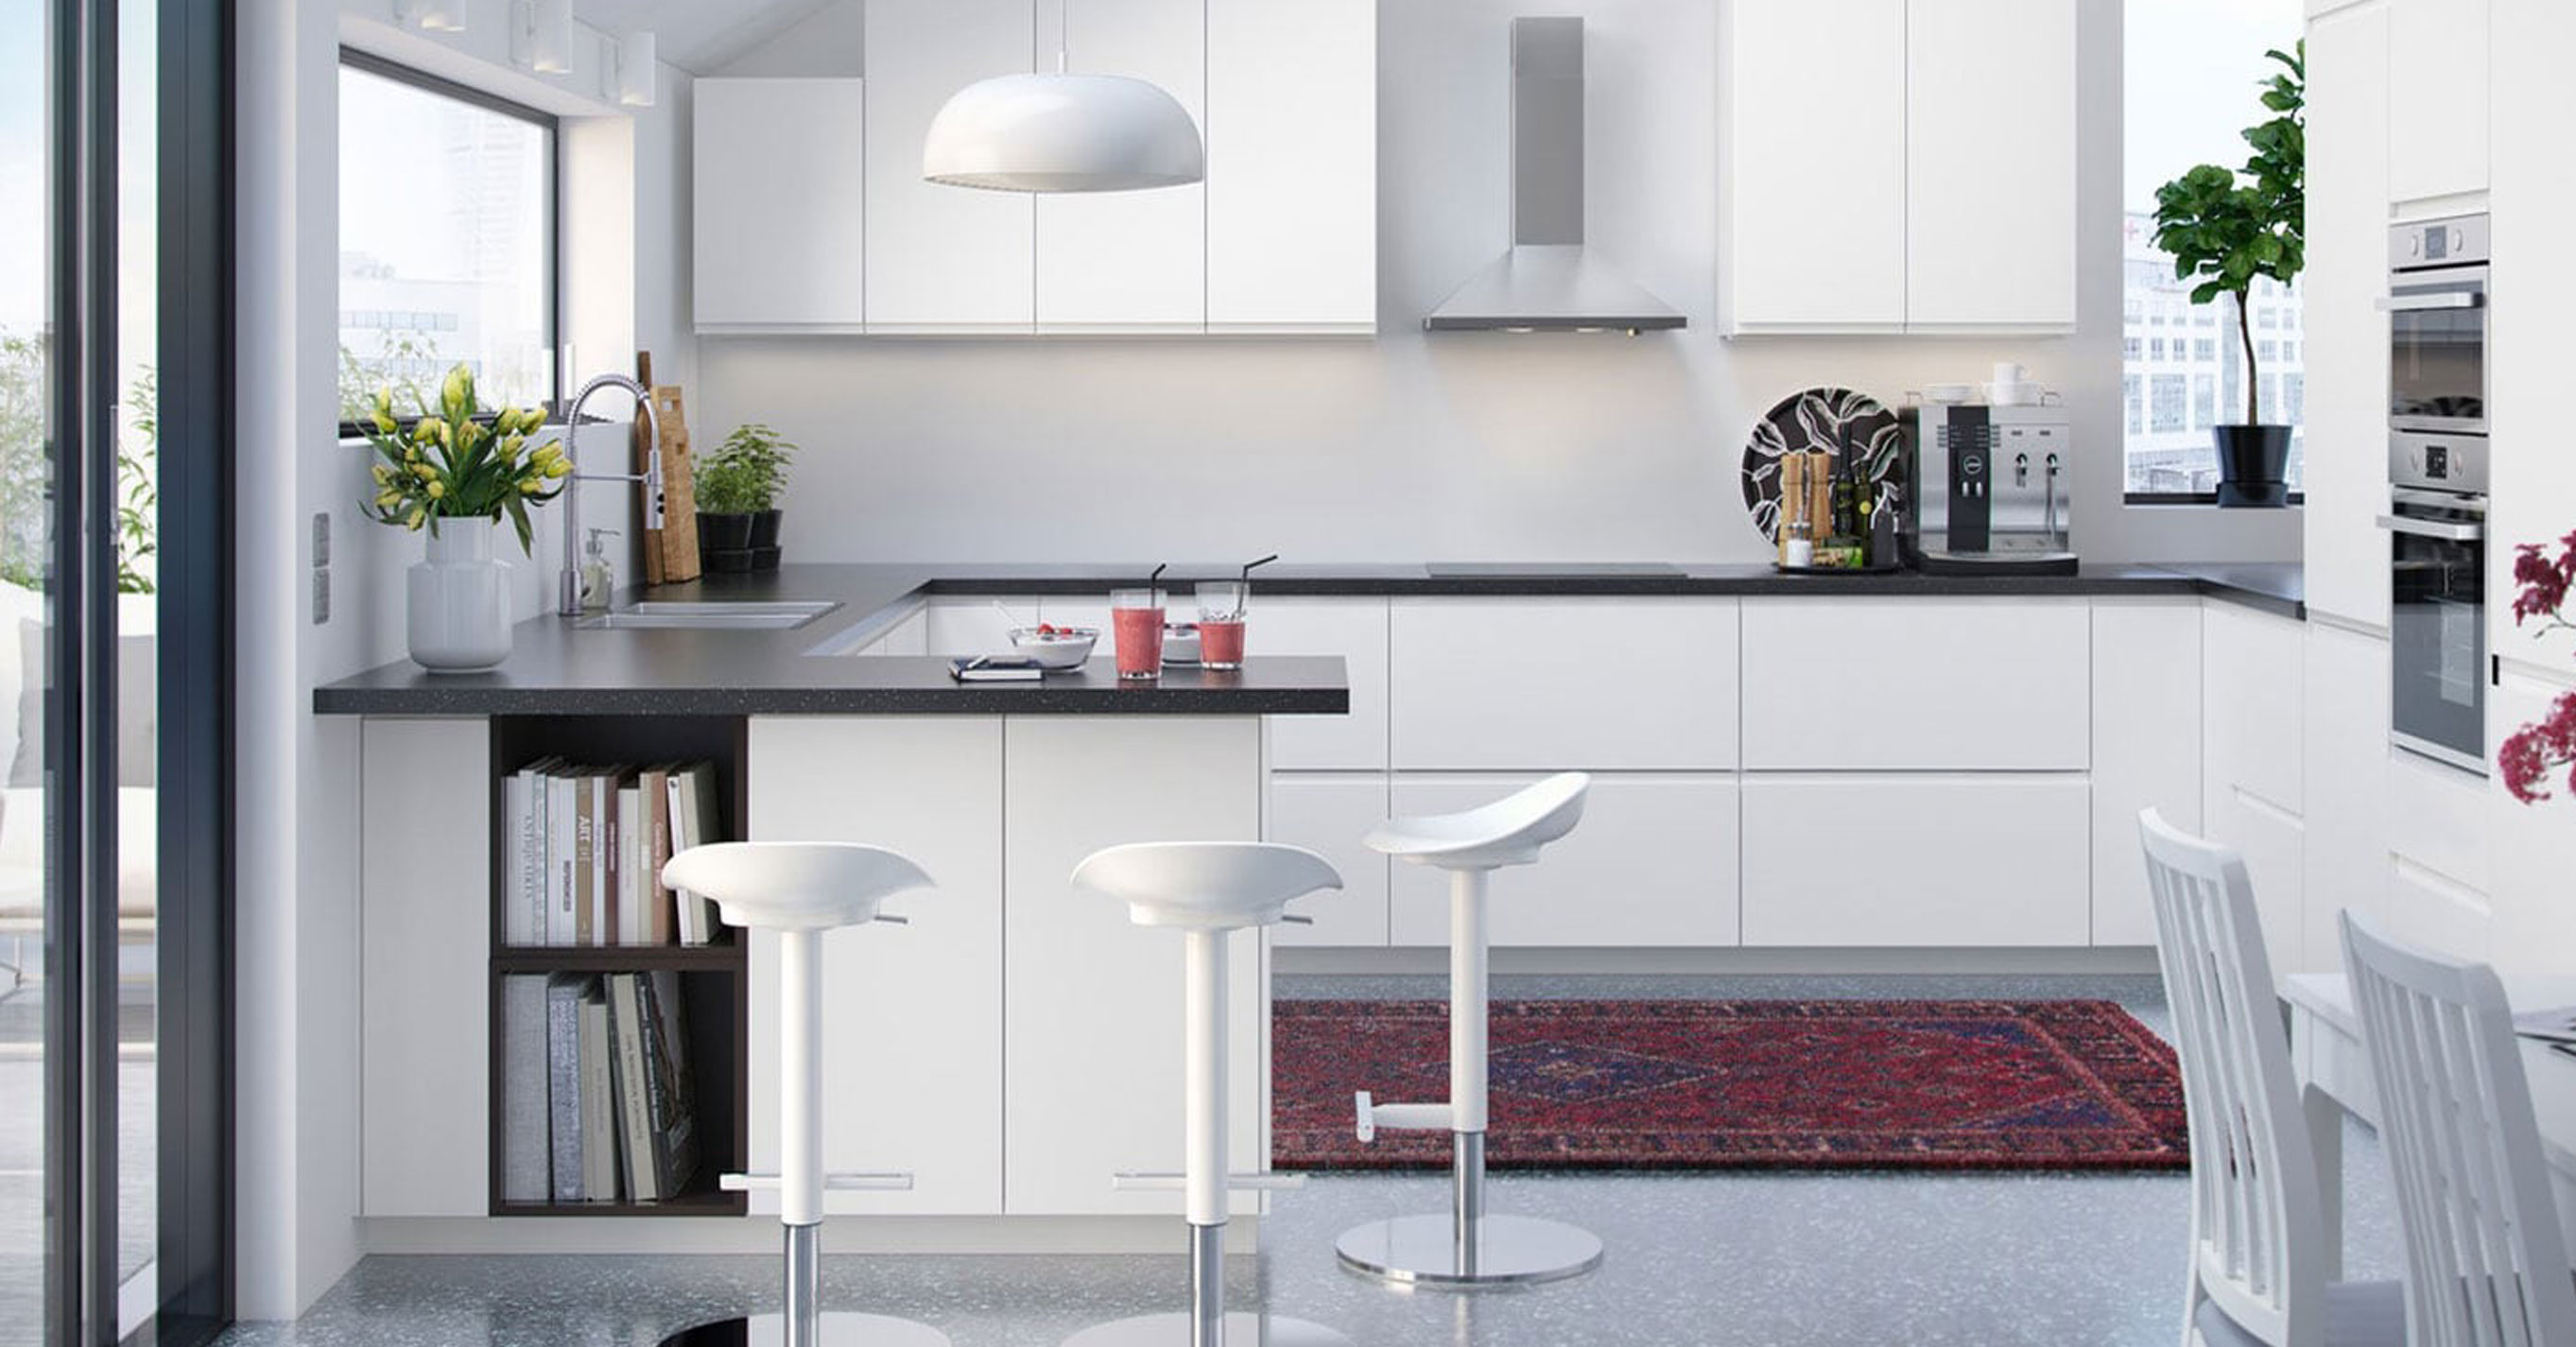 120+ Modular Kitchen Designs Ideas